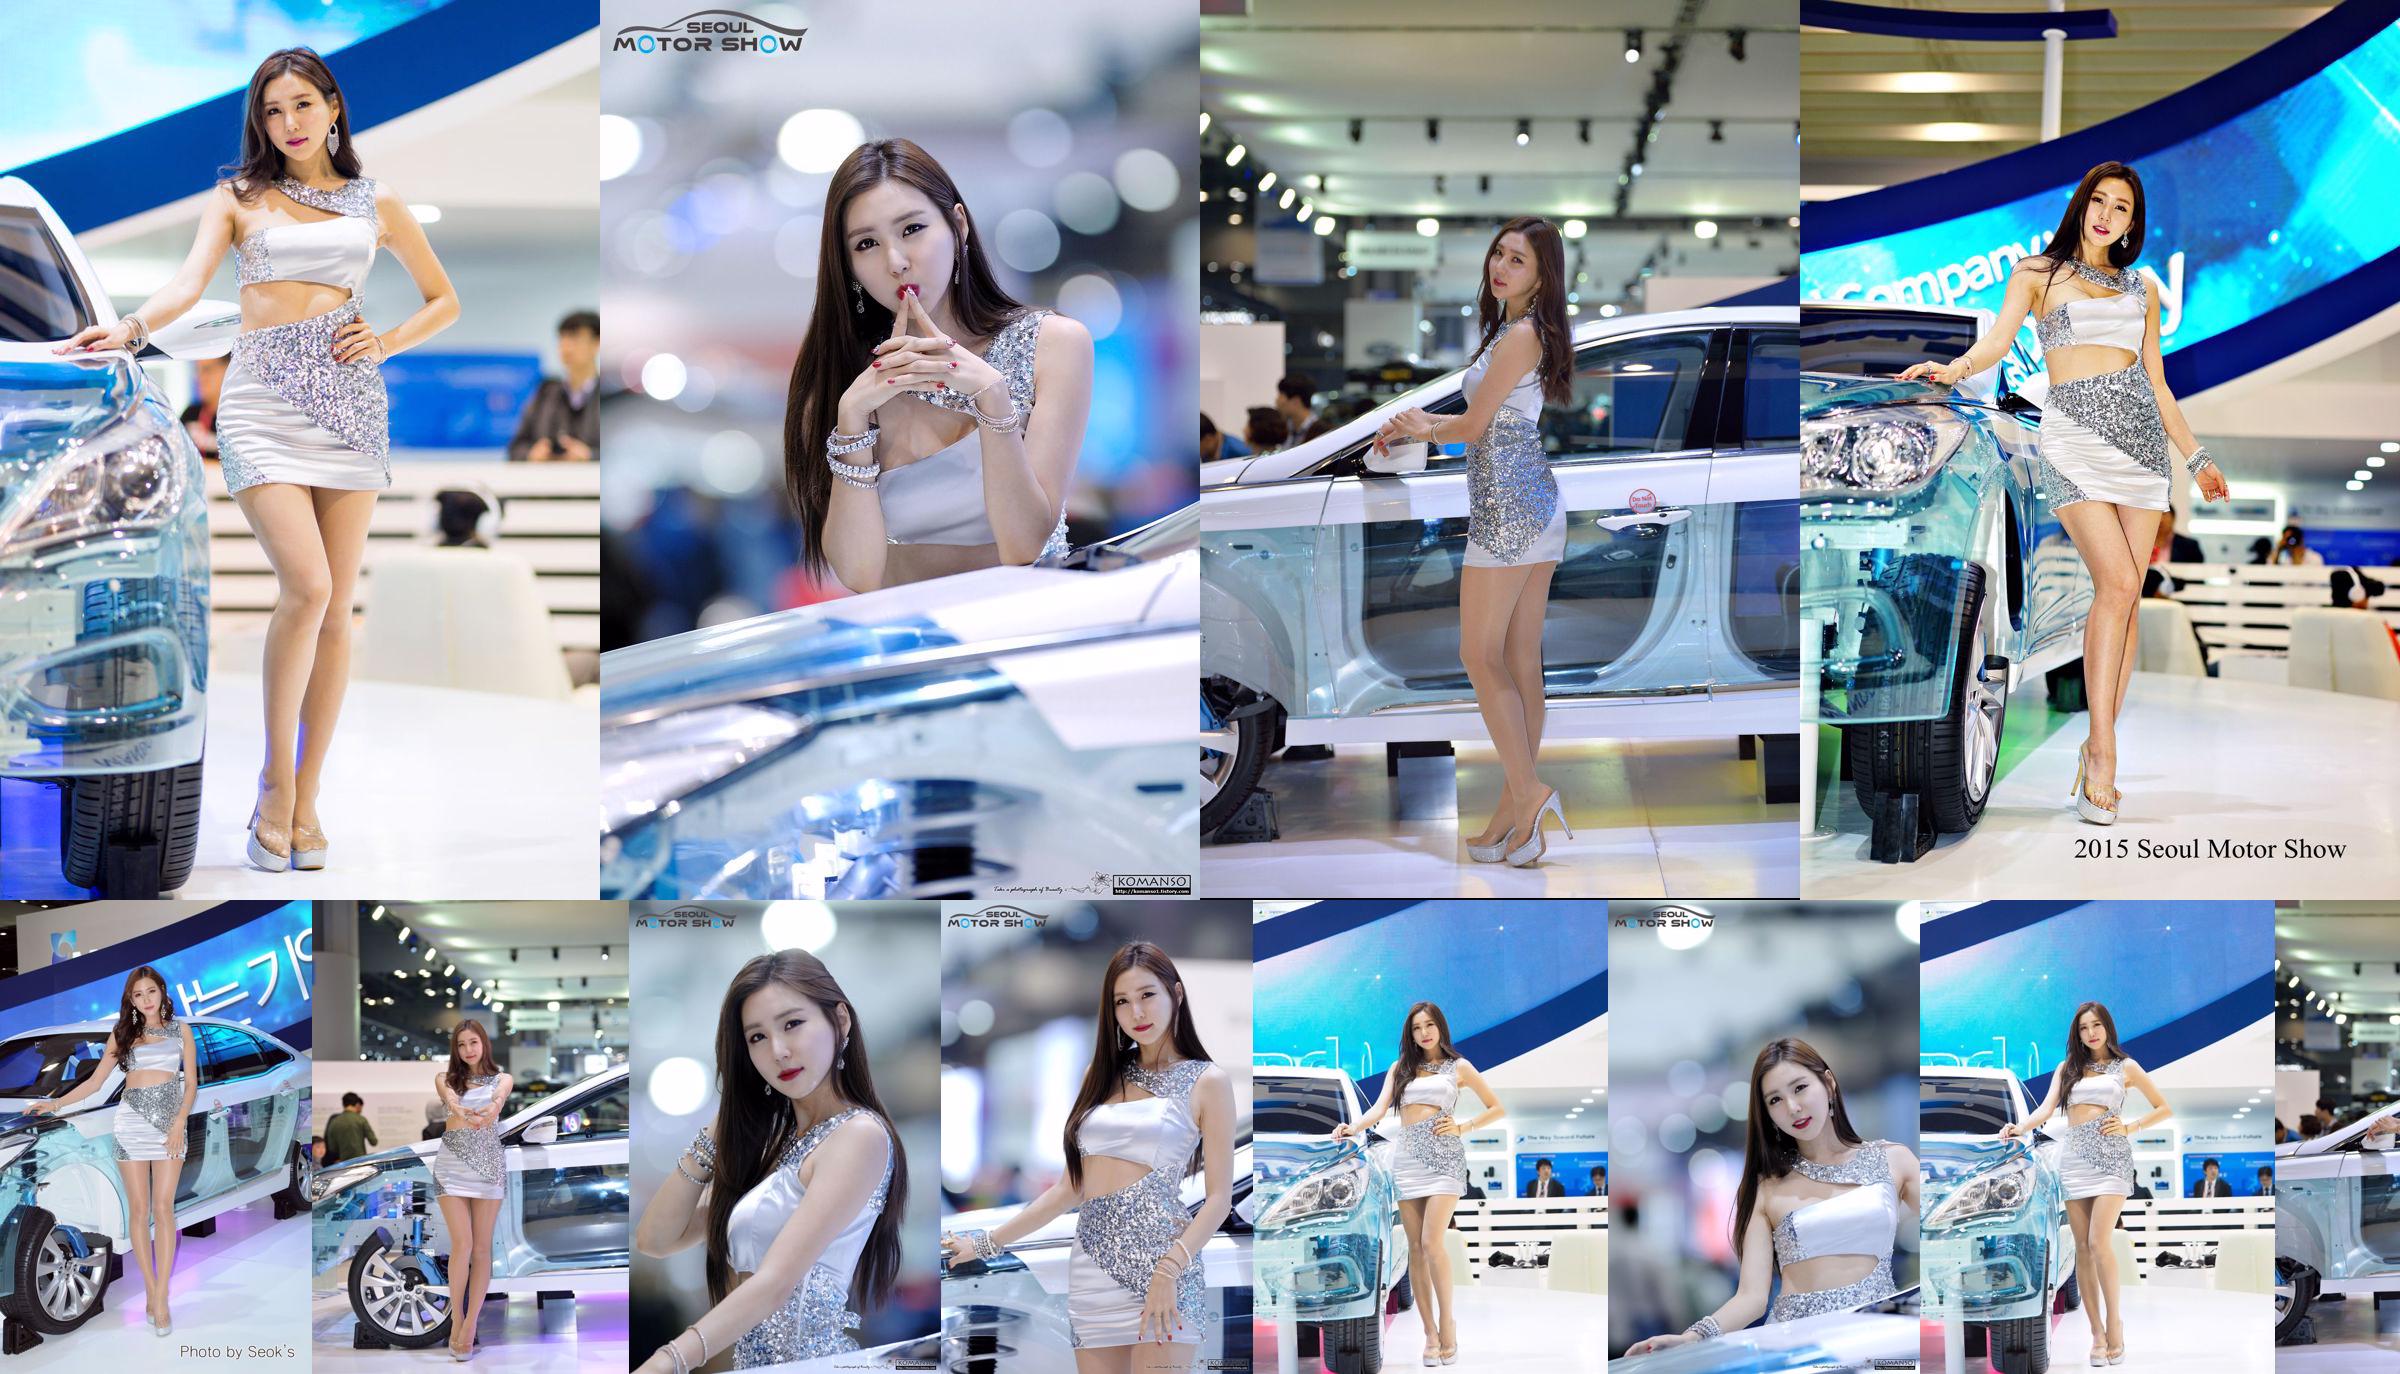 Modelo de carro coreano Choi Yujin-Auto Show Coleção de fotos No.27cc46 Página 7